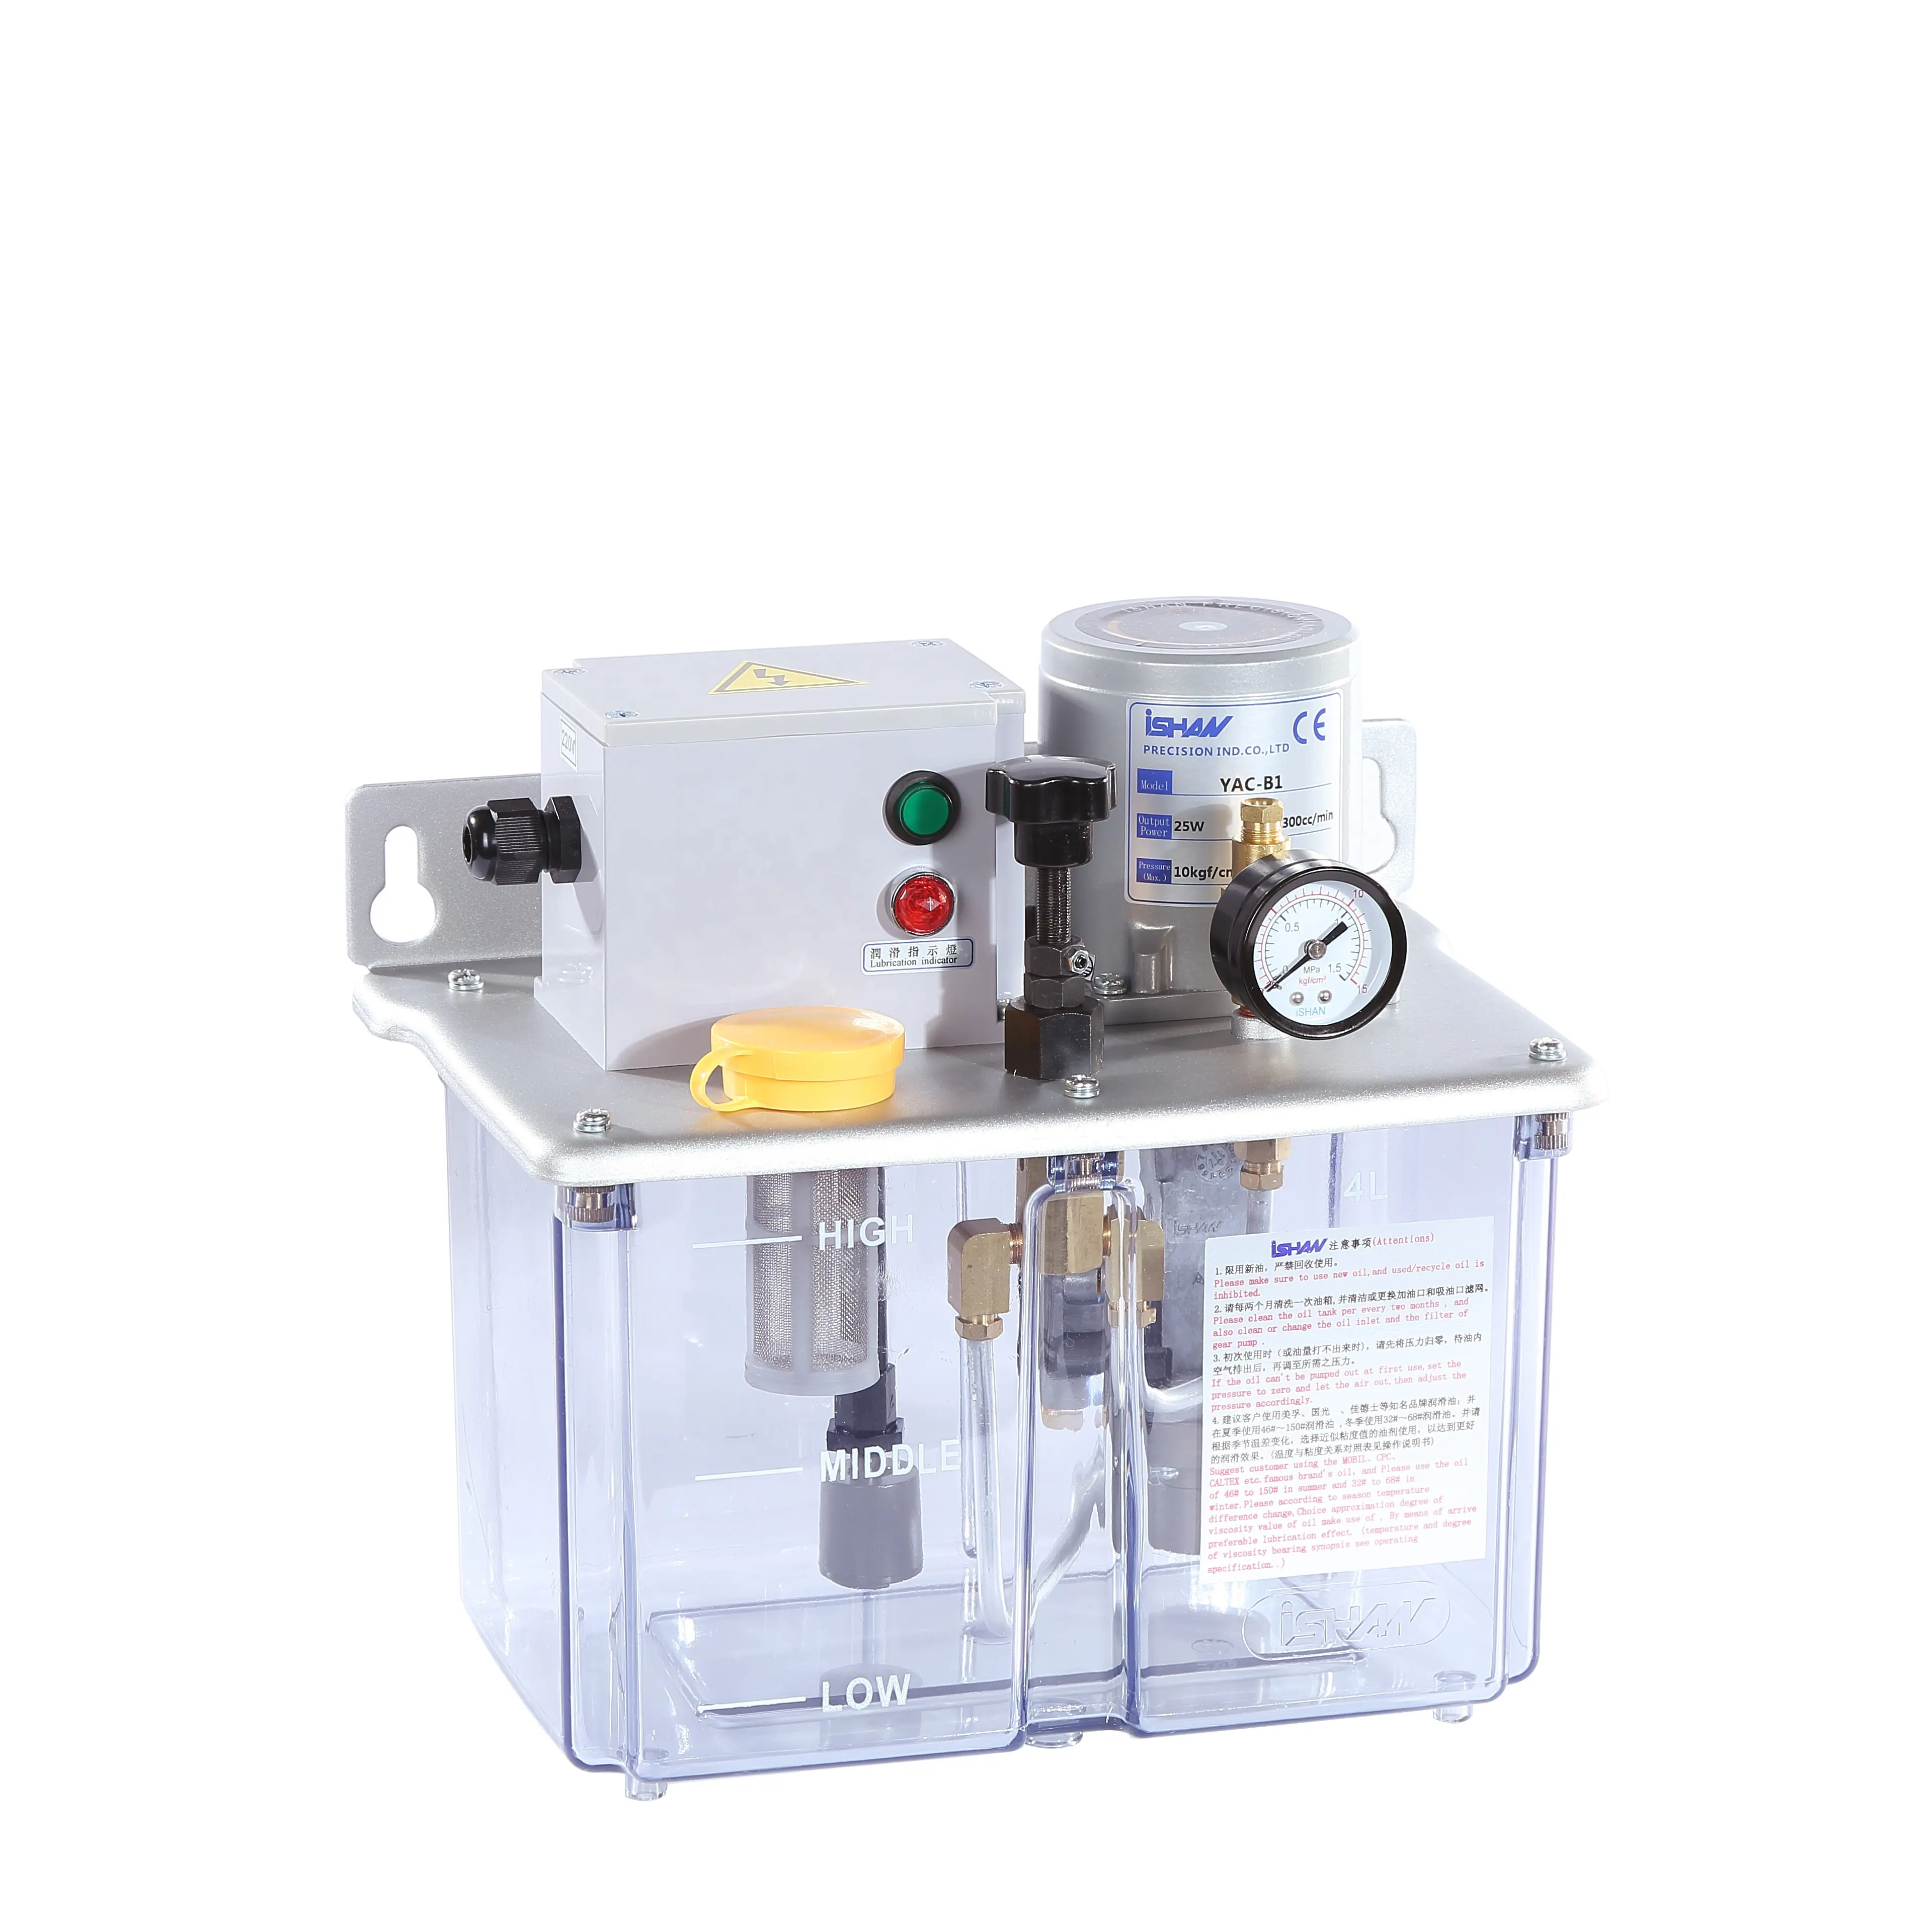 ISHAN-bomba de engranajes eléctrica automática resistente al aceite, tipo de control PLC, 110VAC, 220VAC, 3L, 4L, 25W, 40W, aluminio de resina metálica